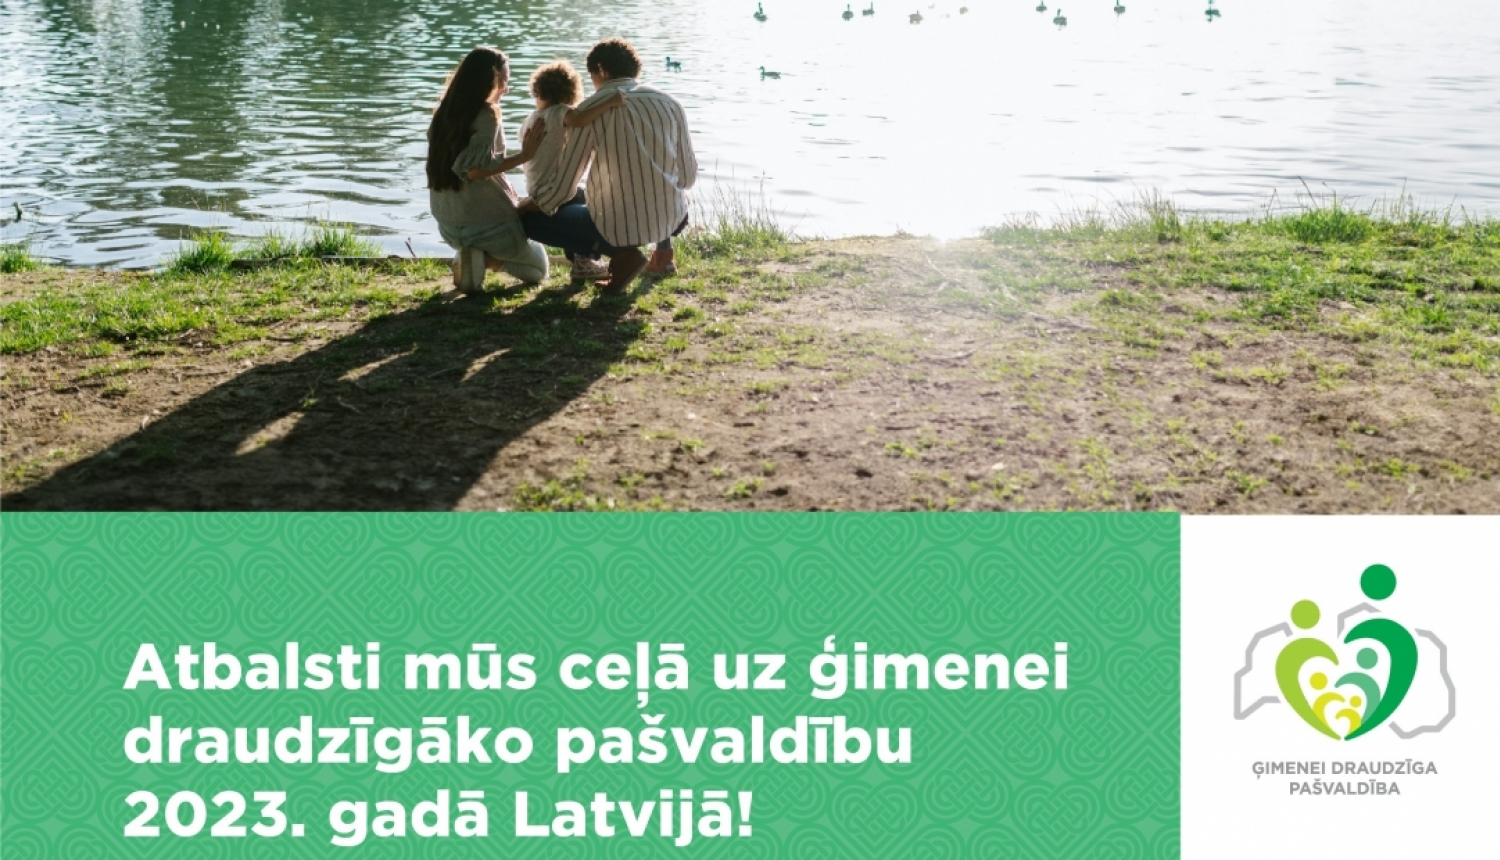 Afiša - atbalsti mūs ceļā uz ģimenei draudzīgāko pašvaldību 2023. gadā Latvijā!